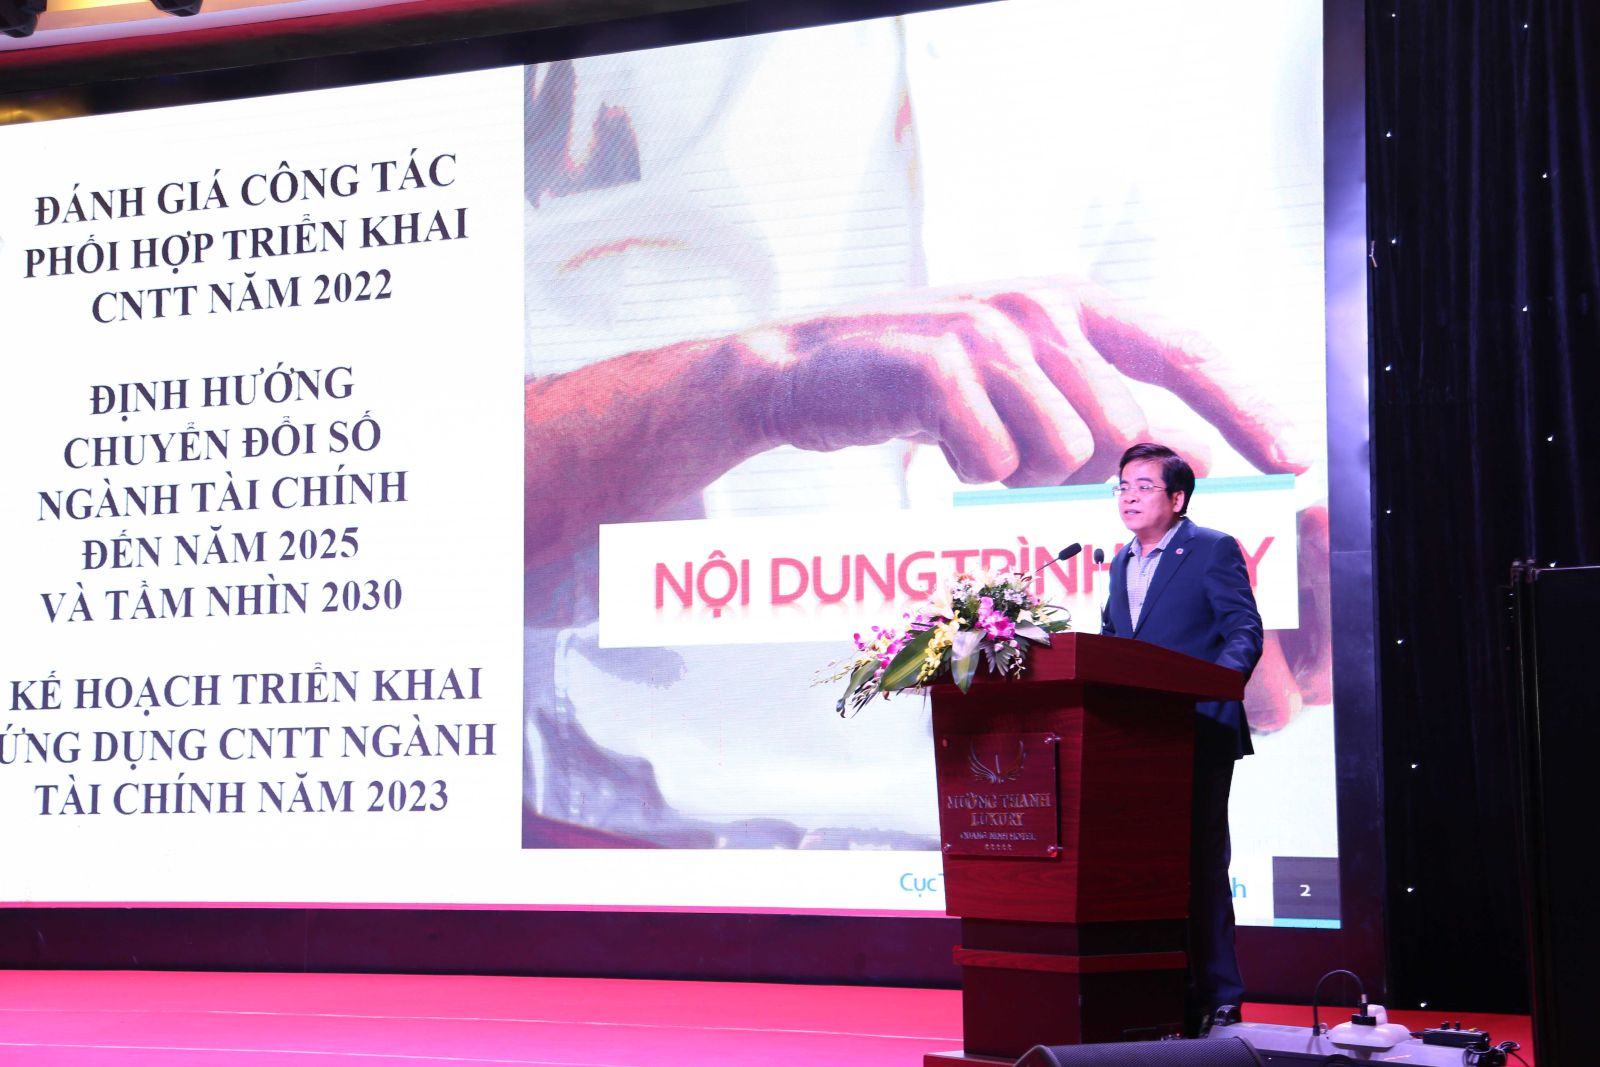 Ông Hoàng Xuân Nam, Phó cục trưởng, Cục Tin học và Thống kê tài chính điểm qua kết quả triển khai ứng dụng CNTT năm 2022 của Bộ Tài chính. Ảnh: Quang Minh.